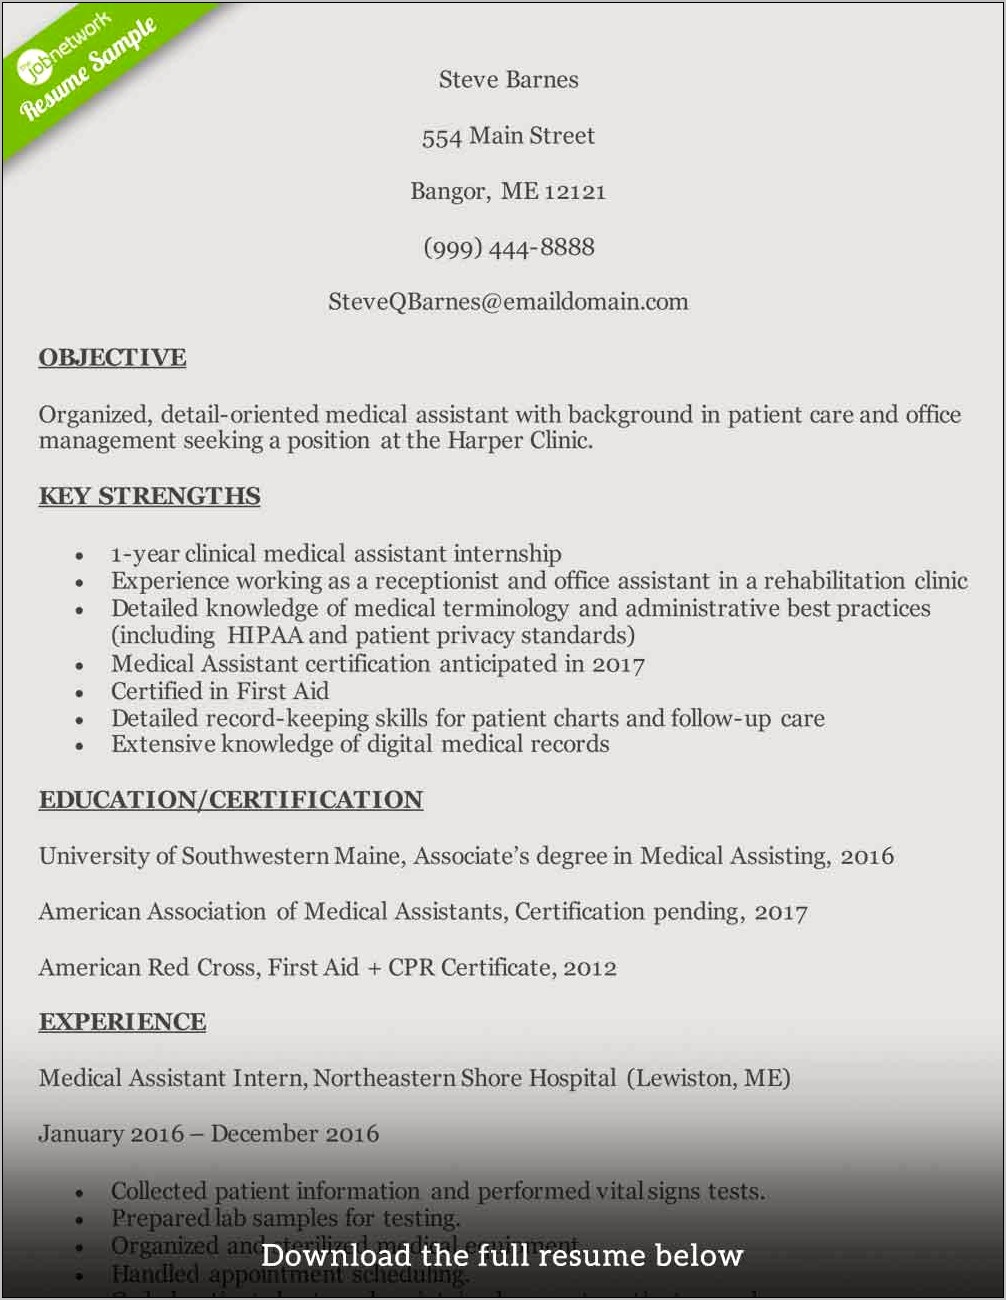 Resume Sample For Medical Assistant Internship